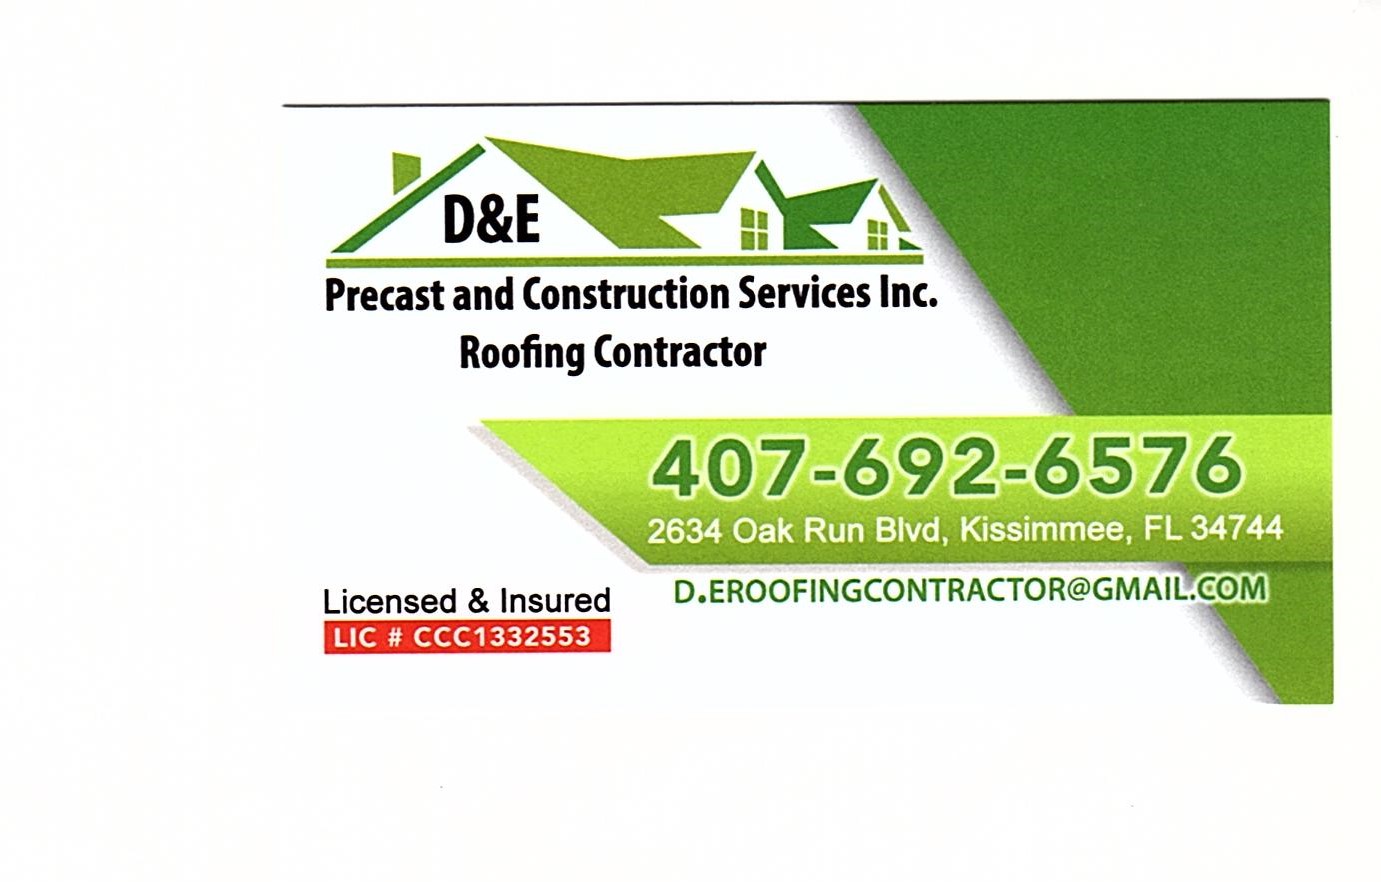 D&E Precast and Construction Services, Inc. Logo